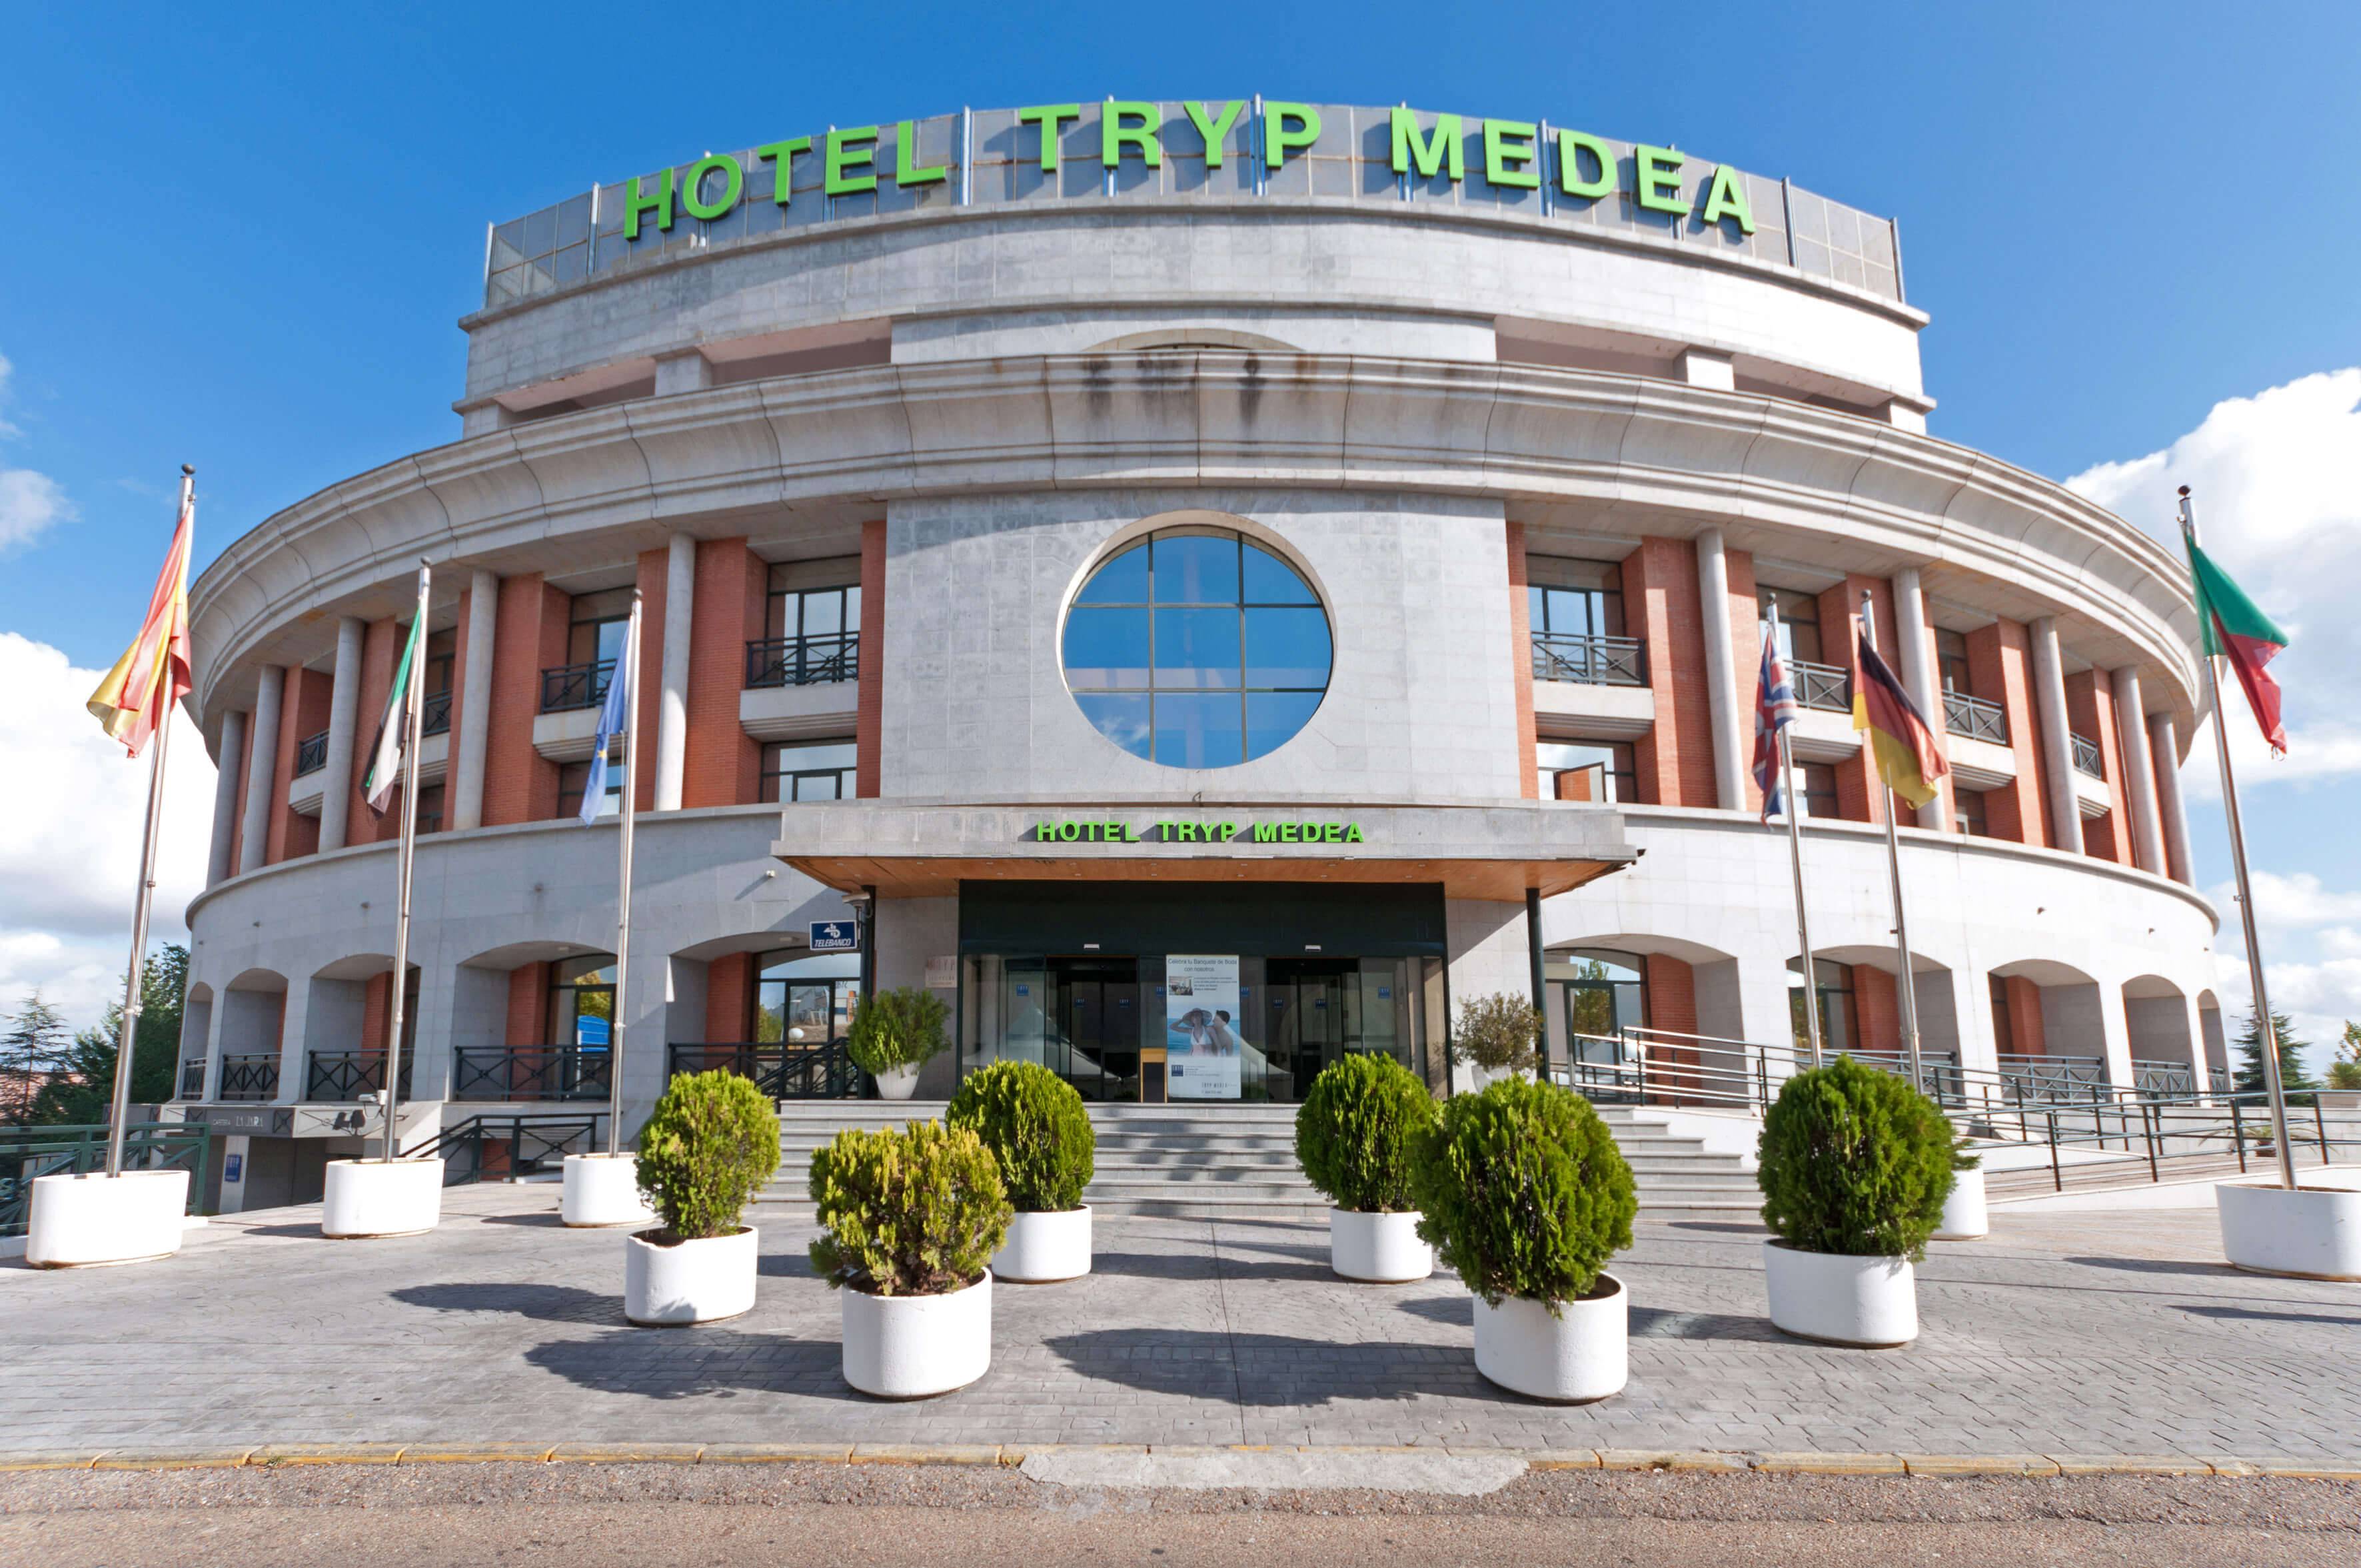 Tryp Medea Mérida Hotel - Fachada principal del edificio.